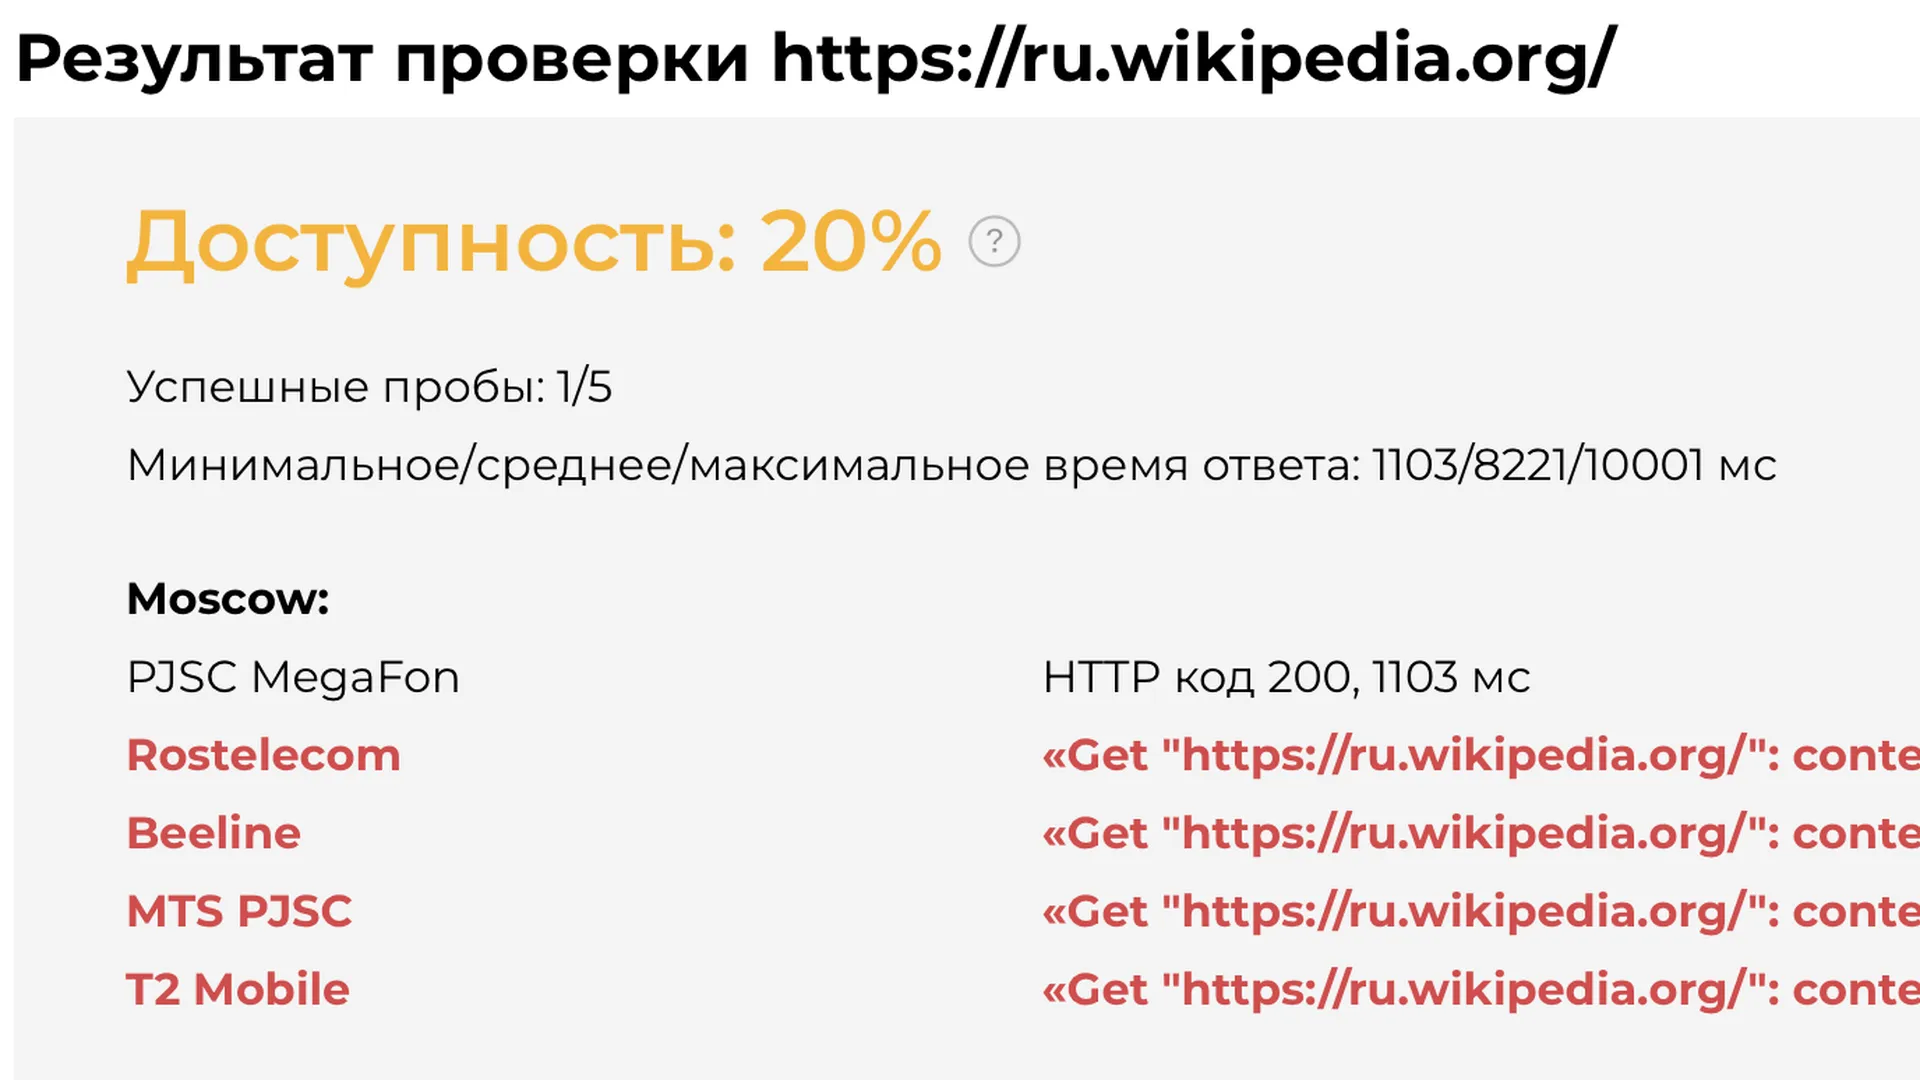 Сервис Global Check предполагает, что в России началась блокировка «Википедии»